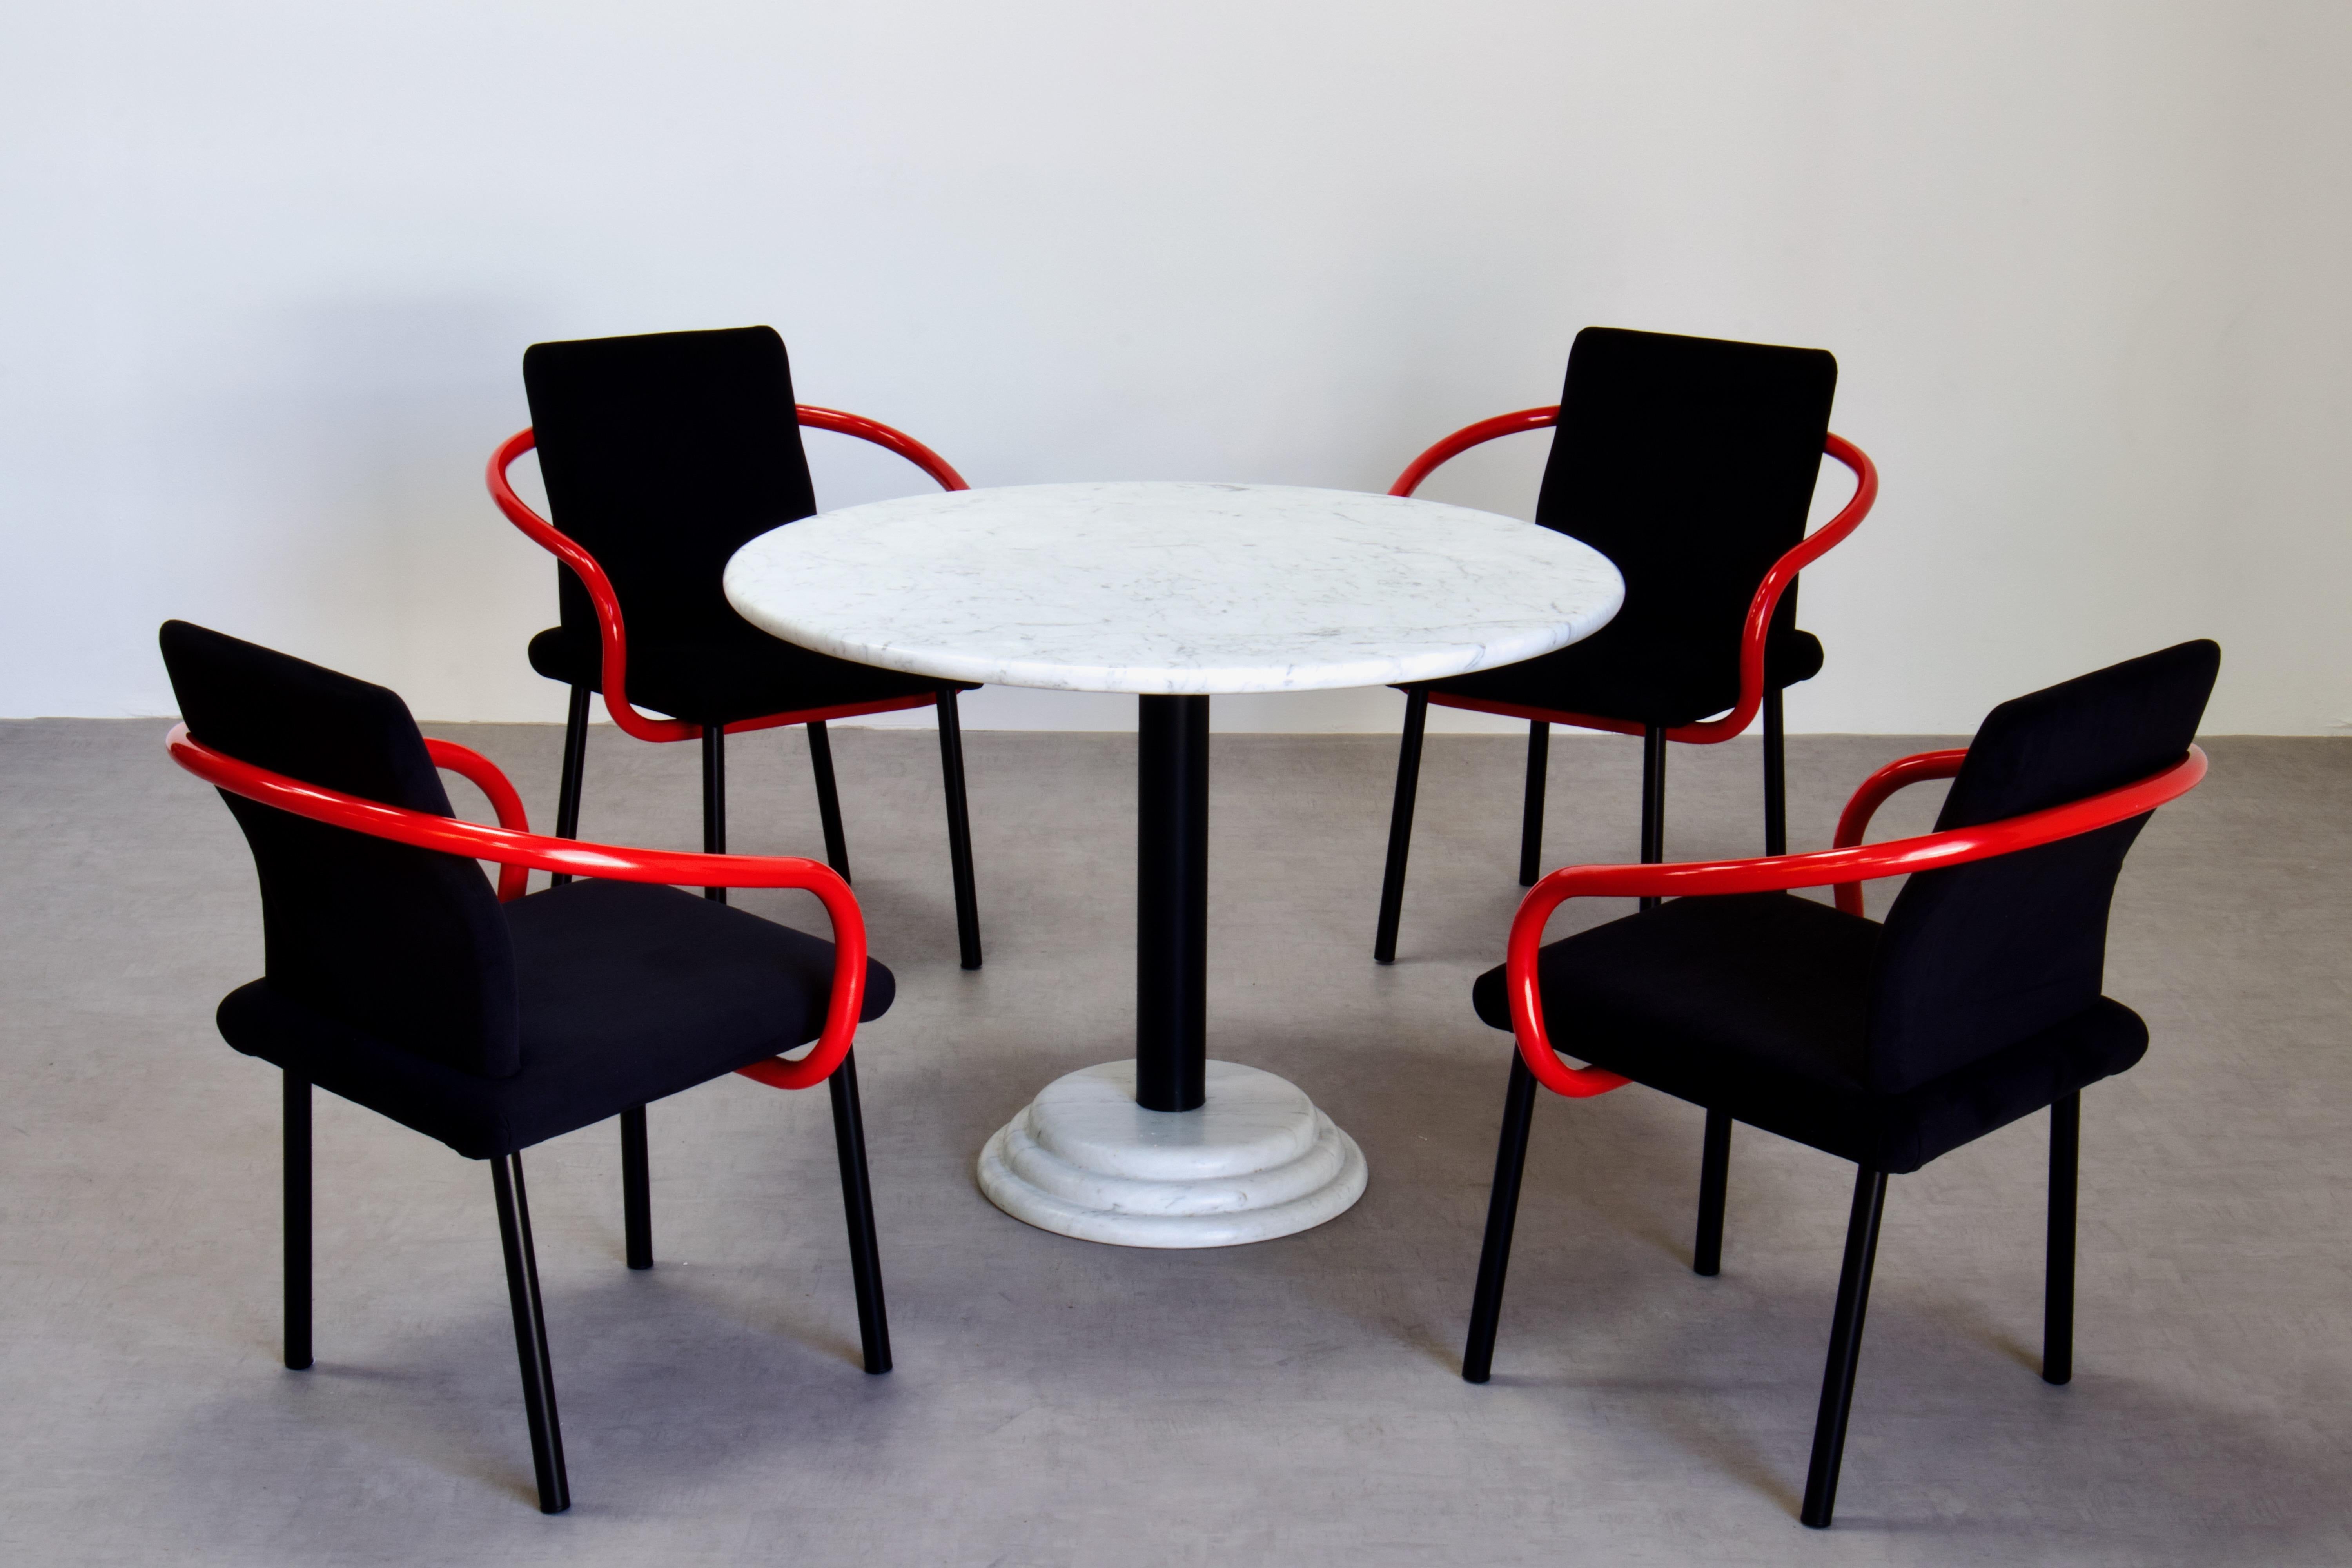 Ikone der Memphis Milano-Bewegung. Ein Satz von vier Mandarin-Stühlen von Ettore Sottsass für Knoll. Schwarze Alcantara-Polsterung. Die Arme sind rot lackiert. Außerdem ein runder Esstisch mit Sockel aus Carrara-Marmor, der Ettore Sottsass